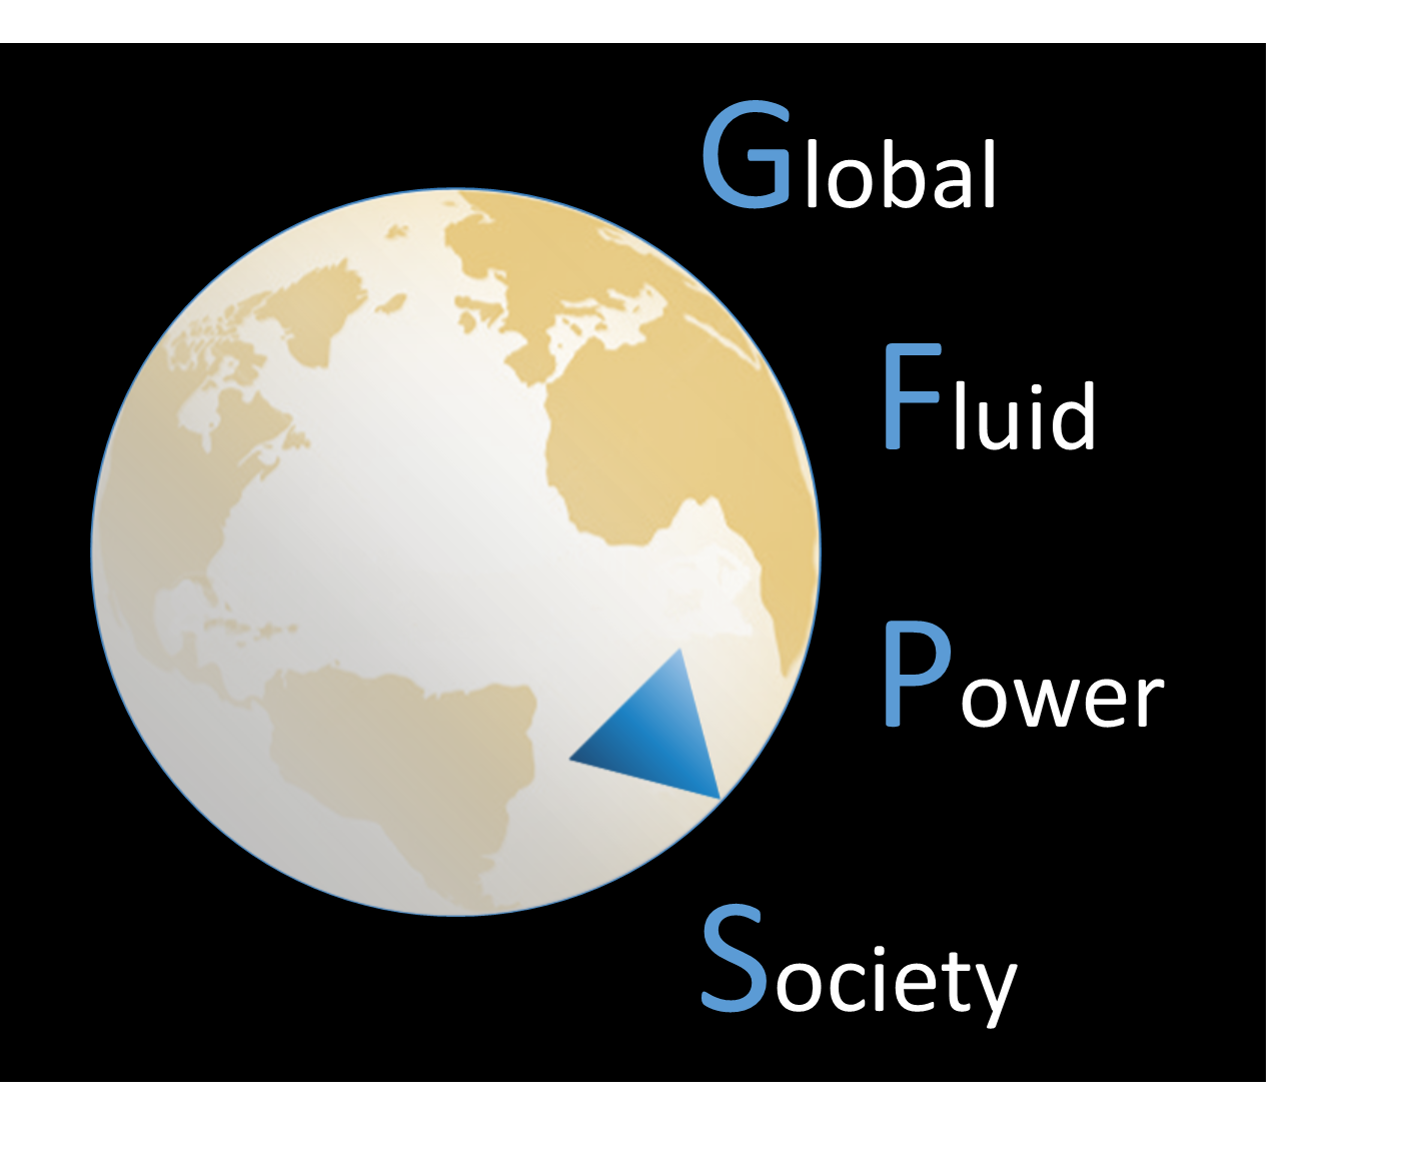 Global Fluid Power Society